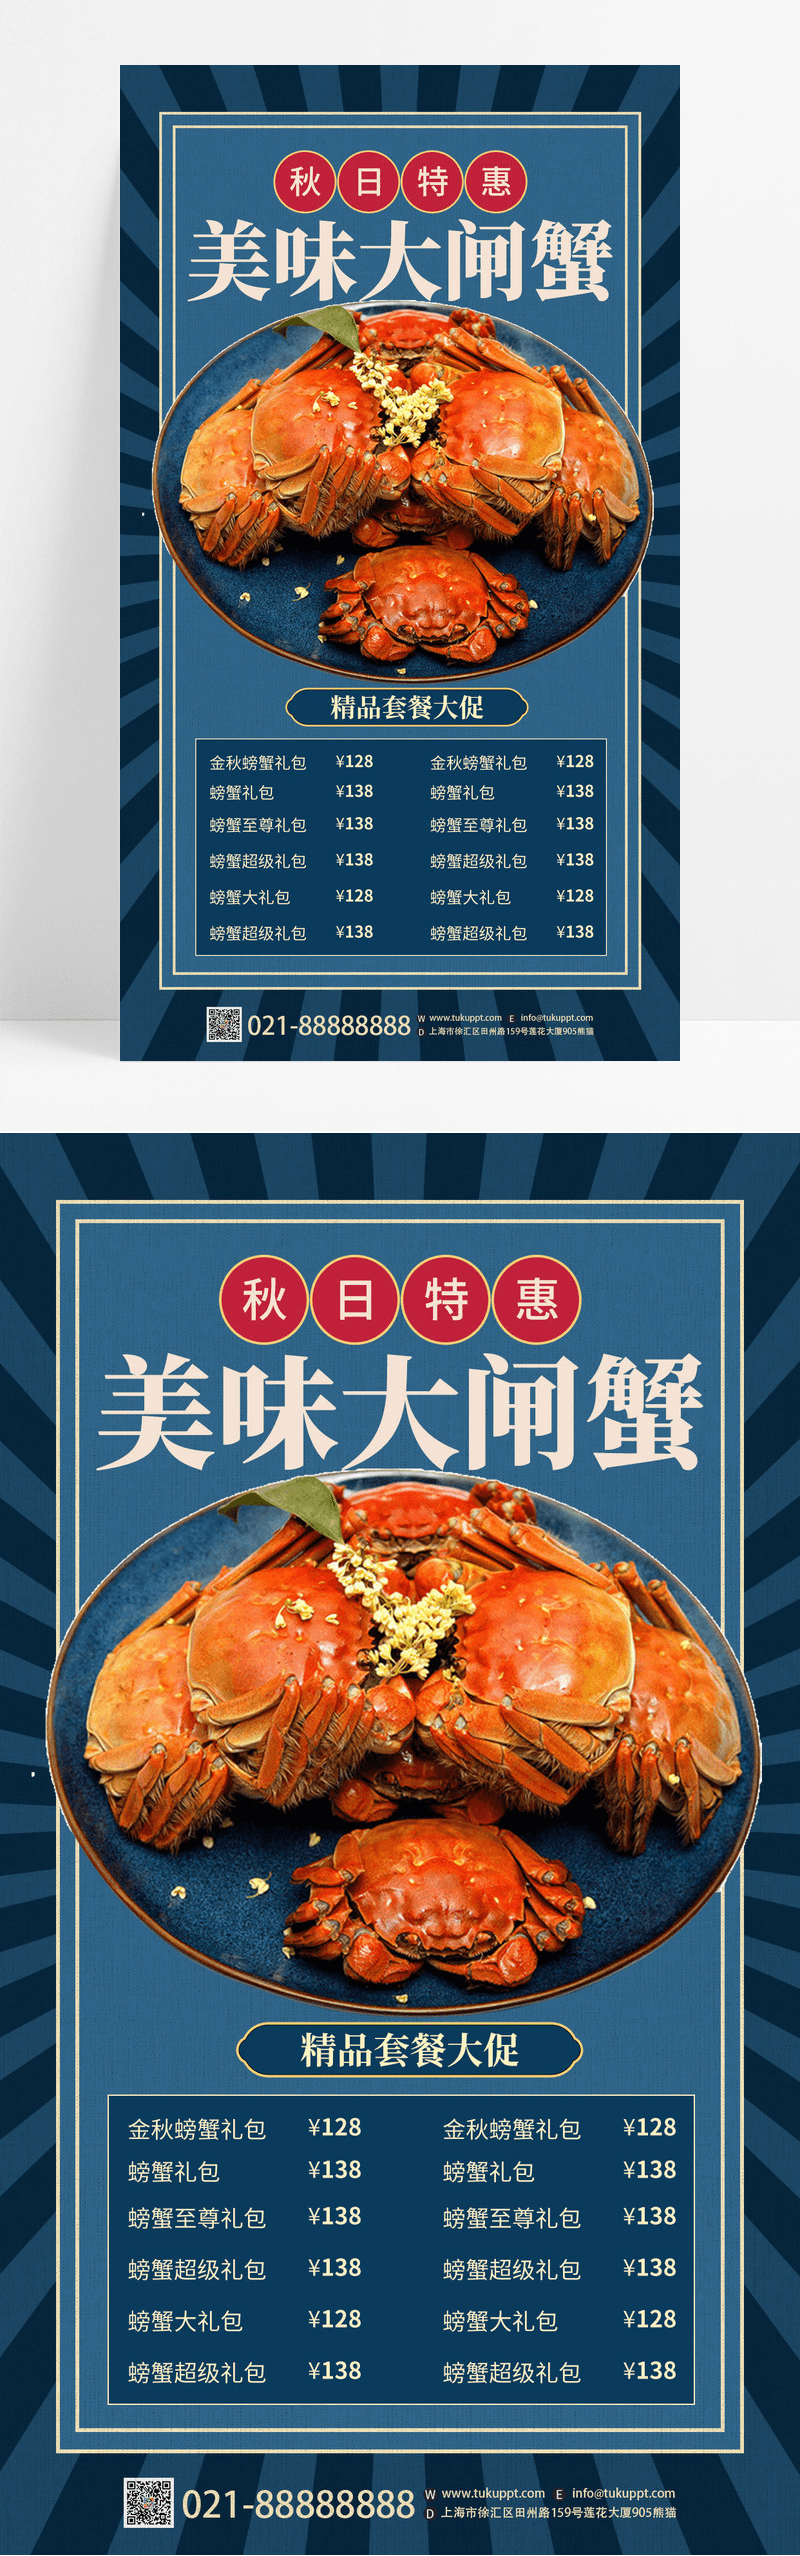 蓝色复古风格美味大闸蟹活动促销美食餐饮宣传手机海报